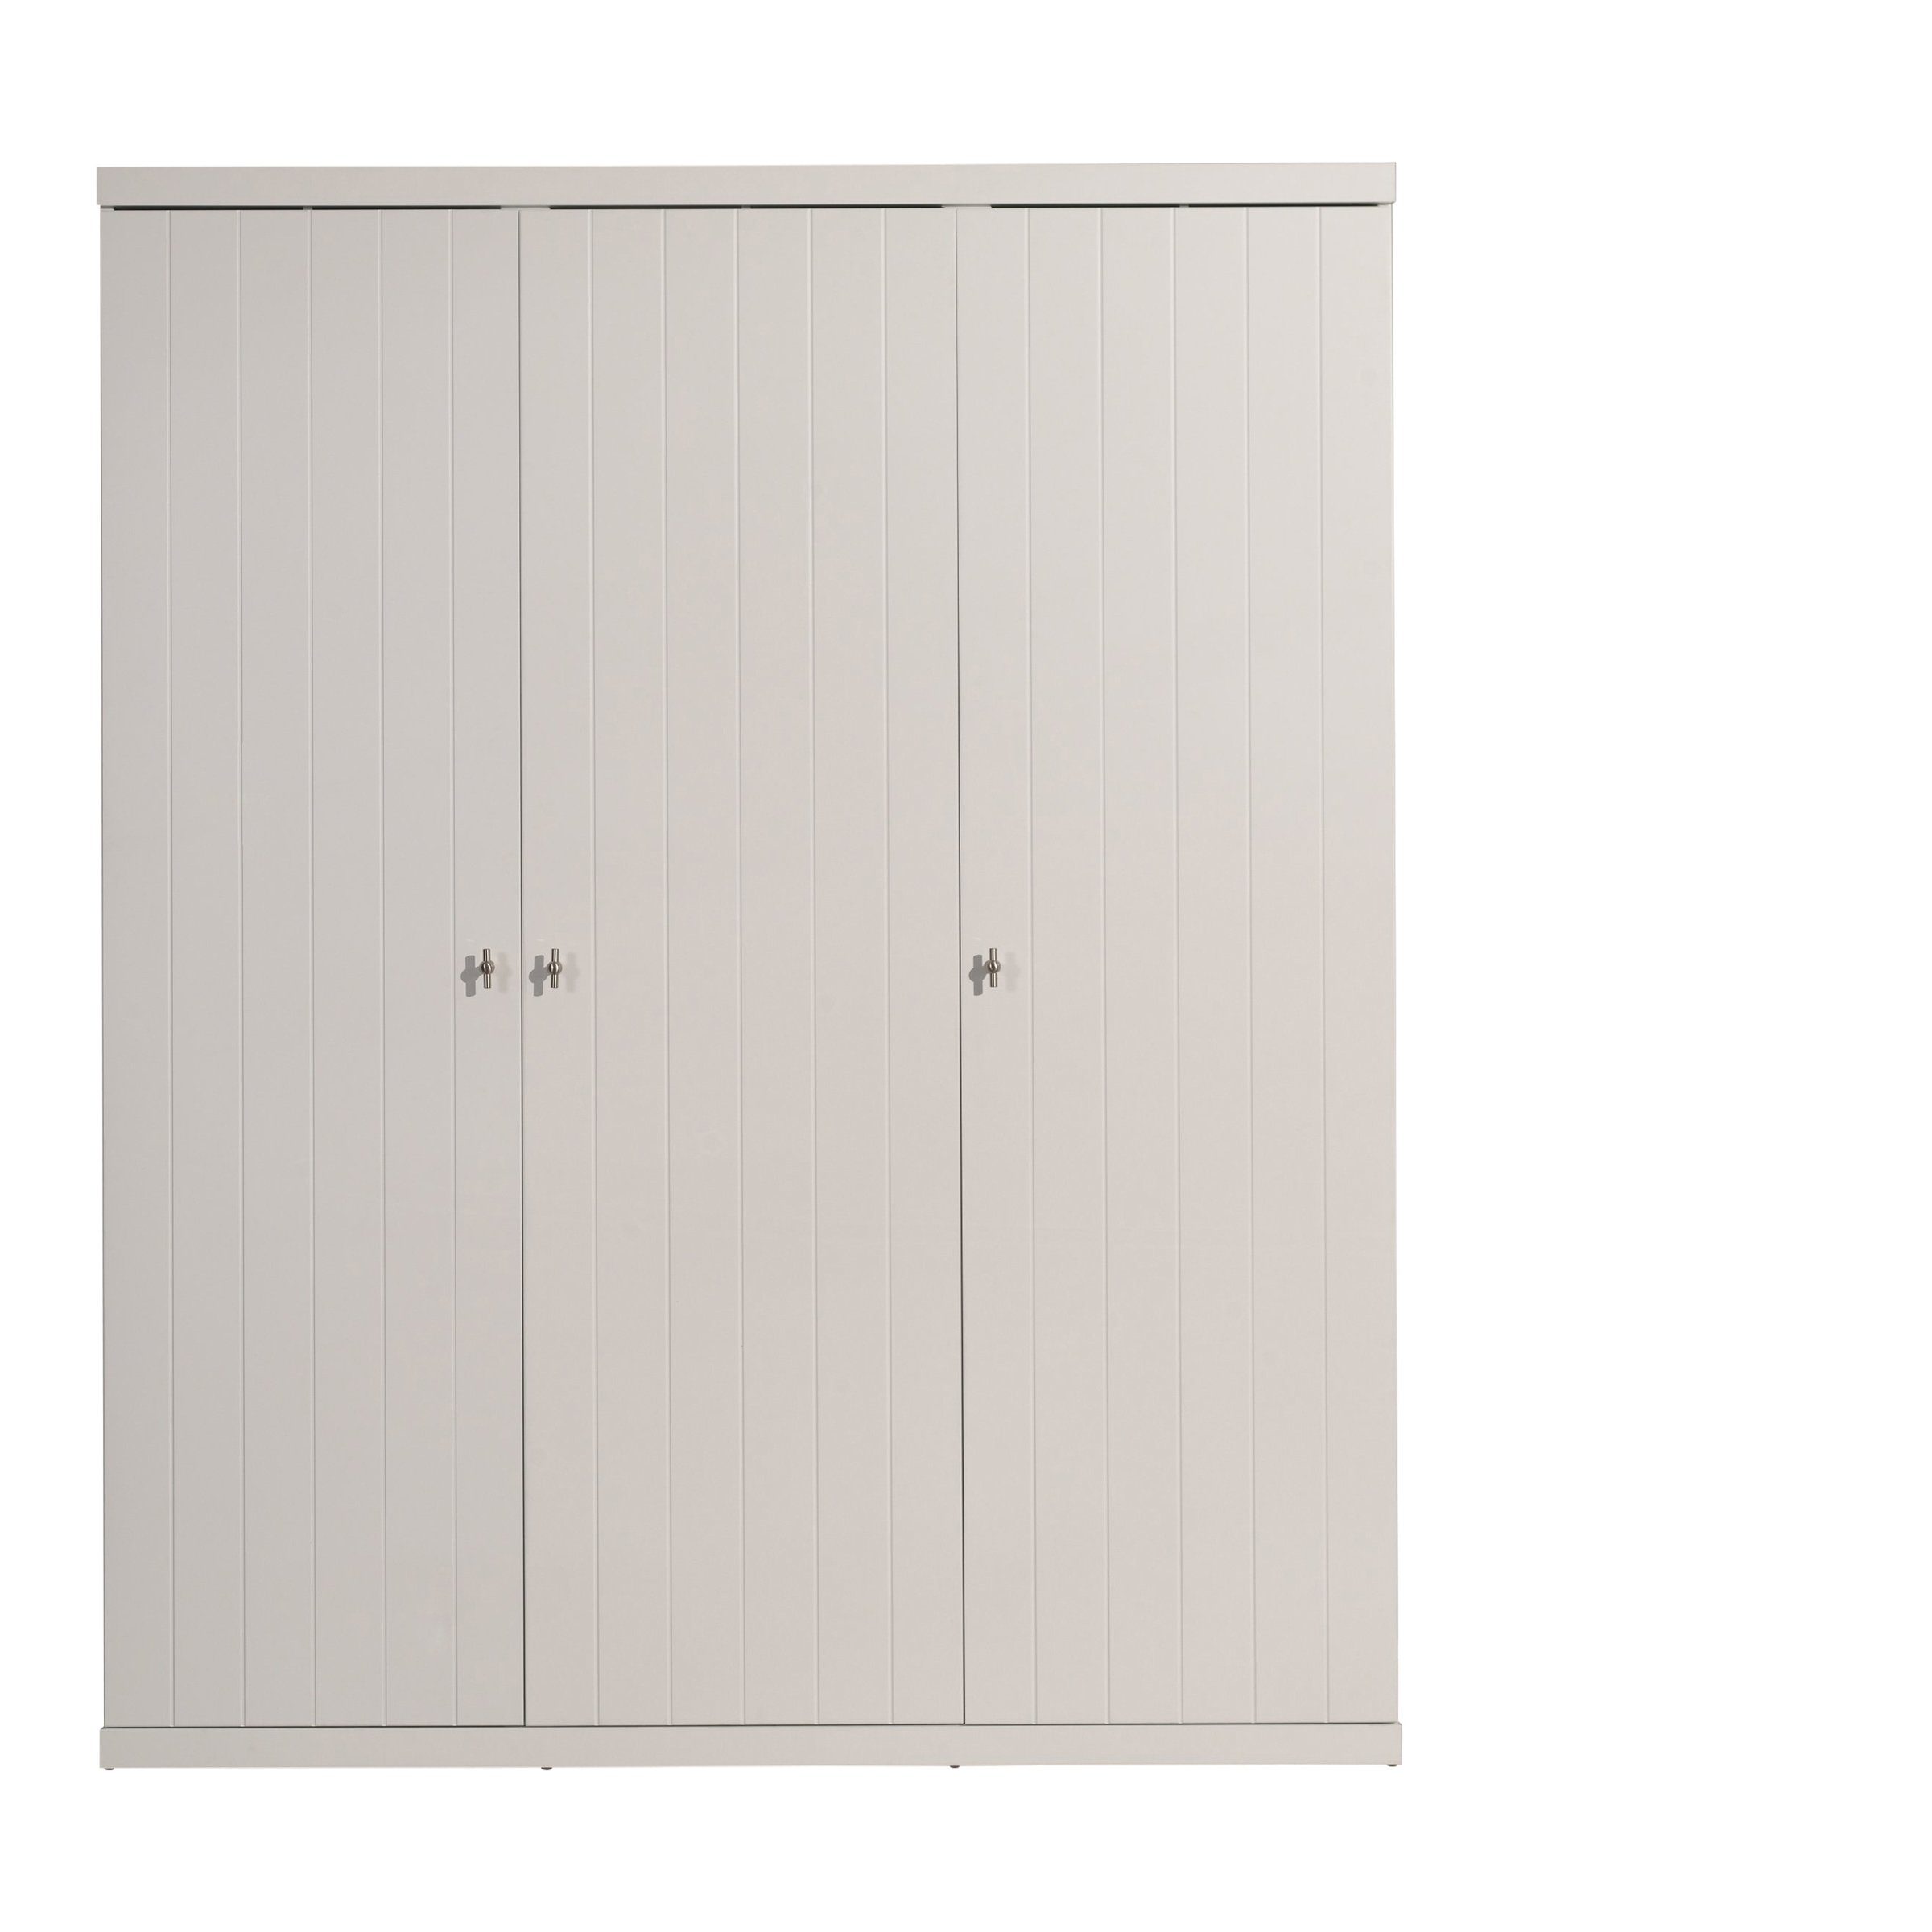 möbelando Kleiderschrank ROBIN aus MDF in Weiß mit 3 Türen. Abmessungen (BxHxT) 166x204,5x57 cm